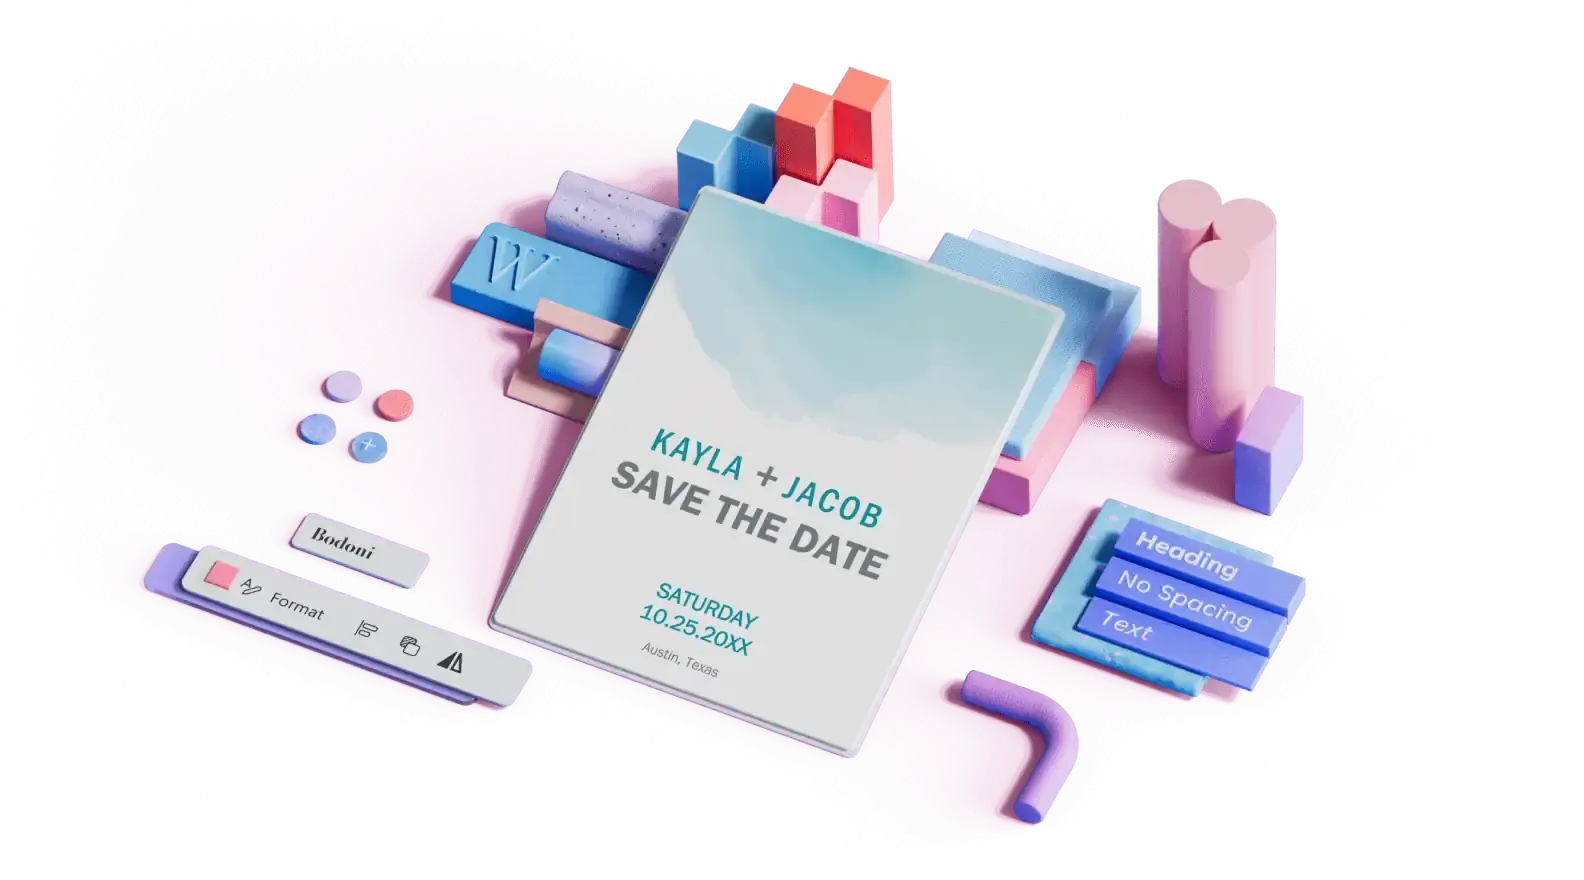 Vorlage für das Hochzeitsdatum, umgeben von 3D-Design-Elementen